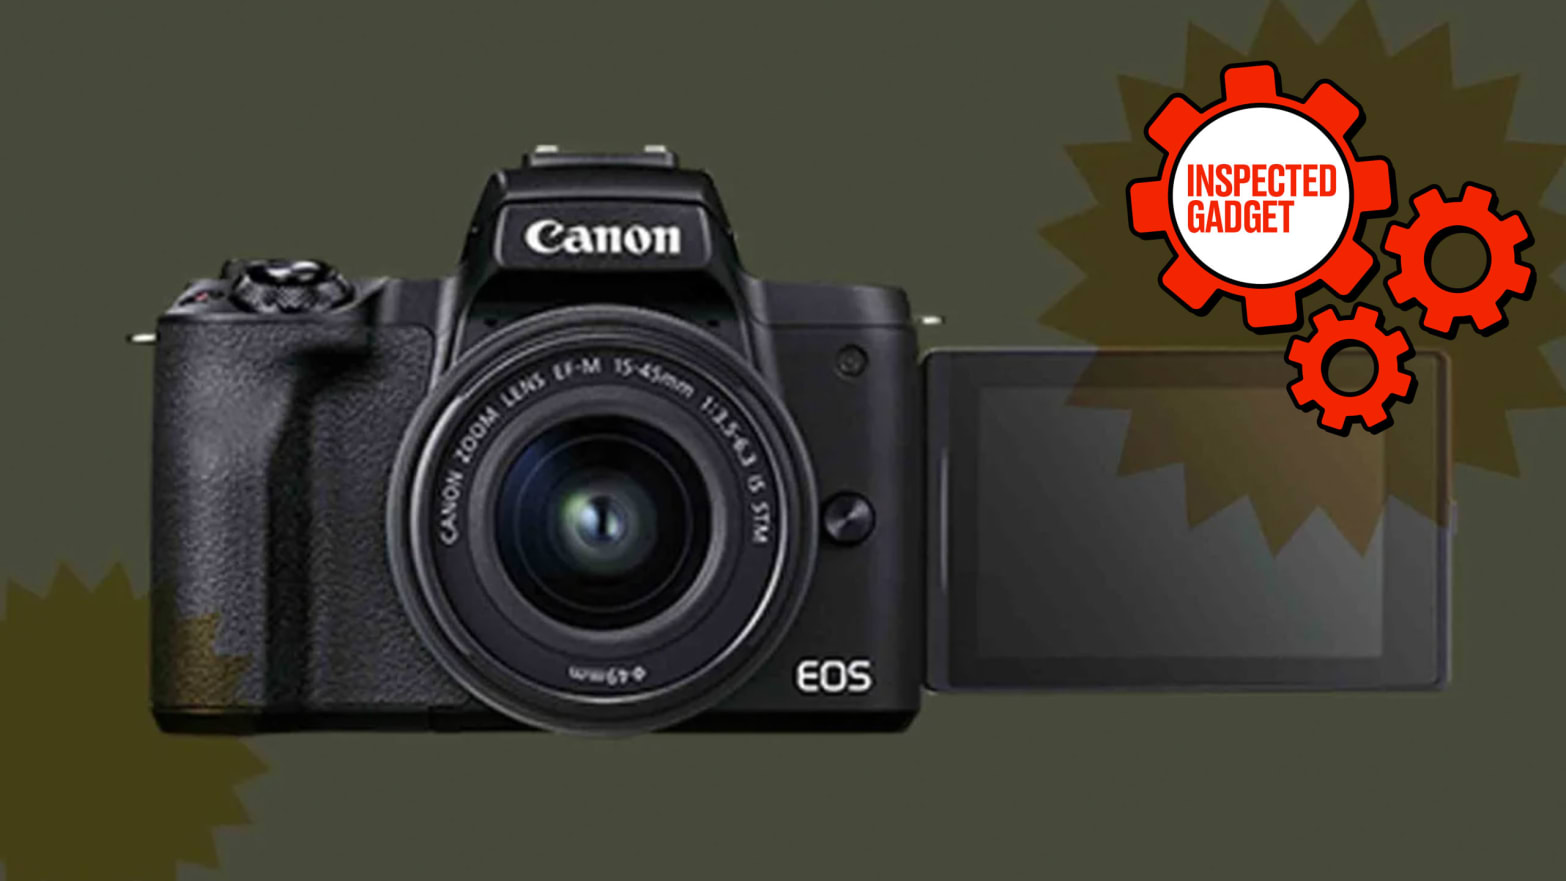 Canon EOS M50 Mark II - Cameras - Canon Ireland